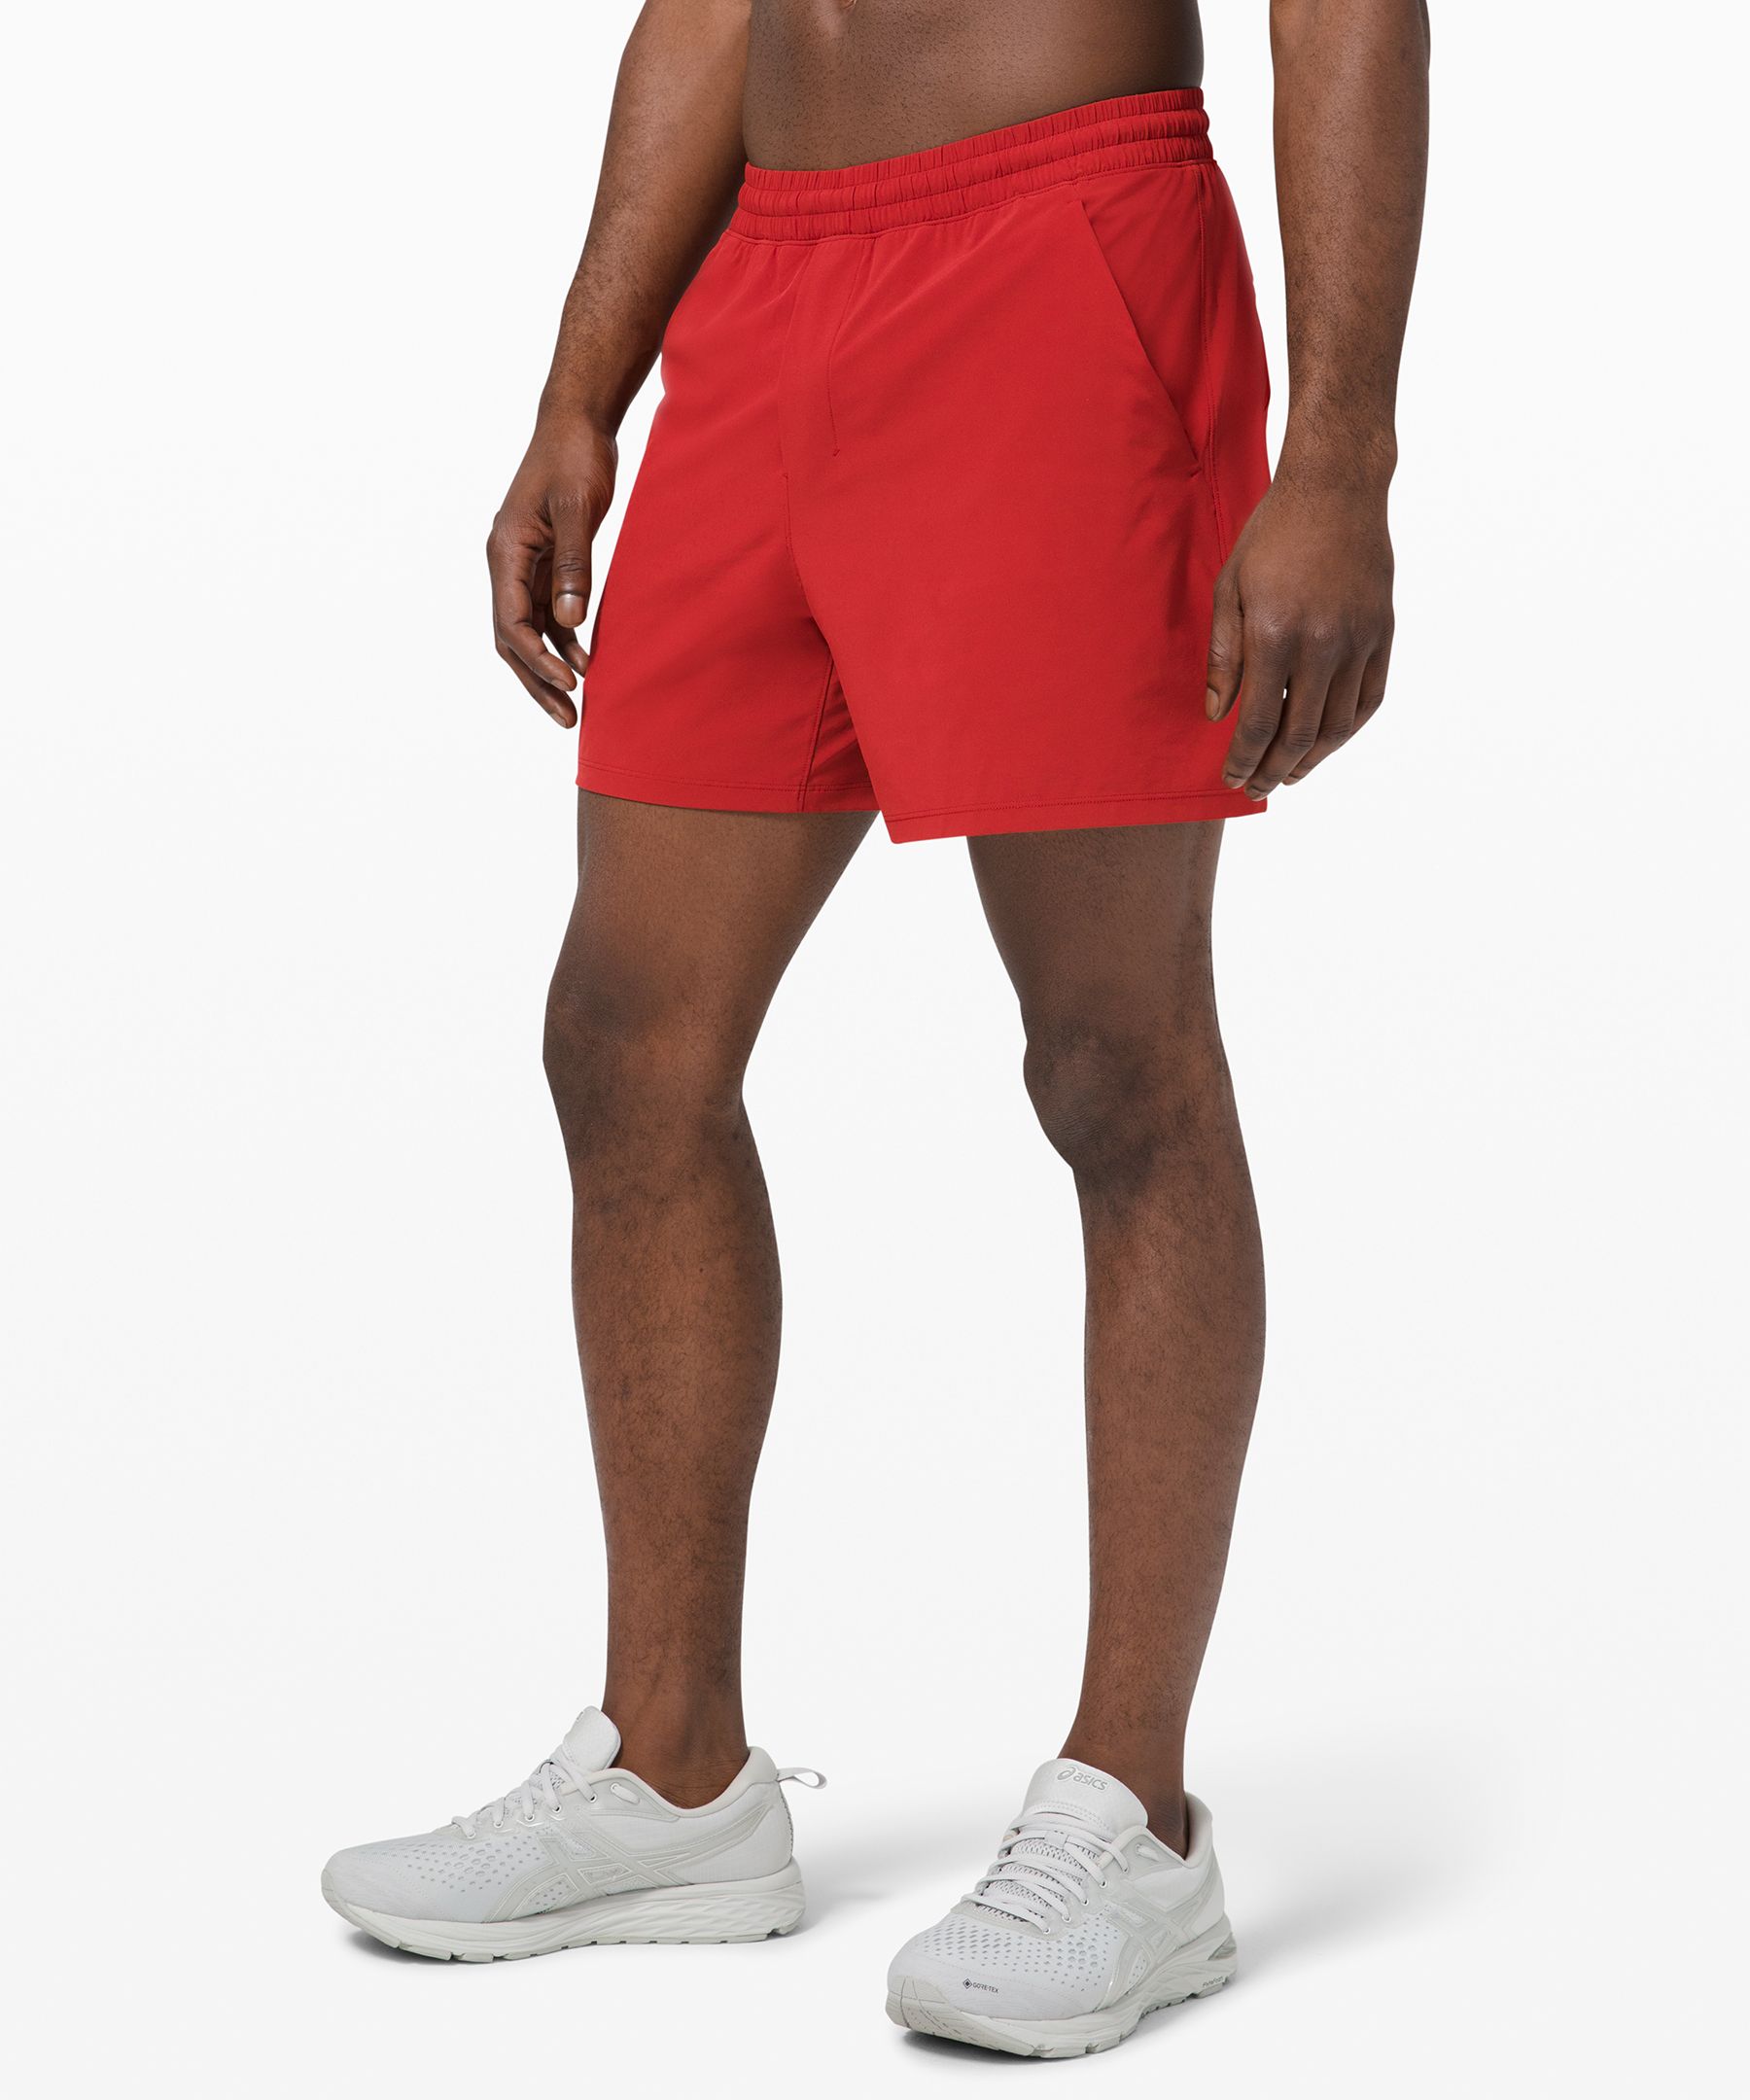 lululemon shorts with phone pocket